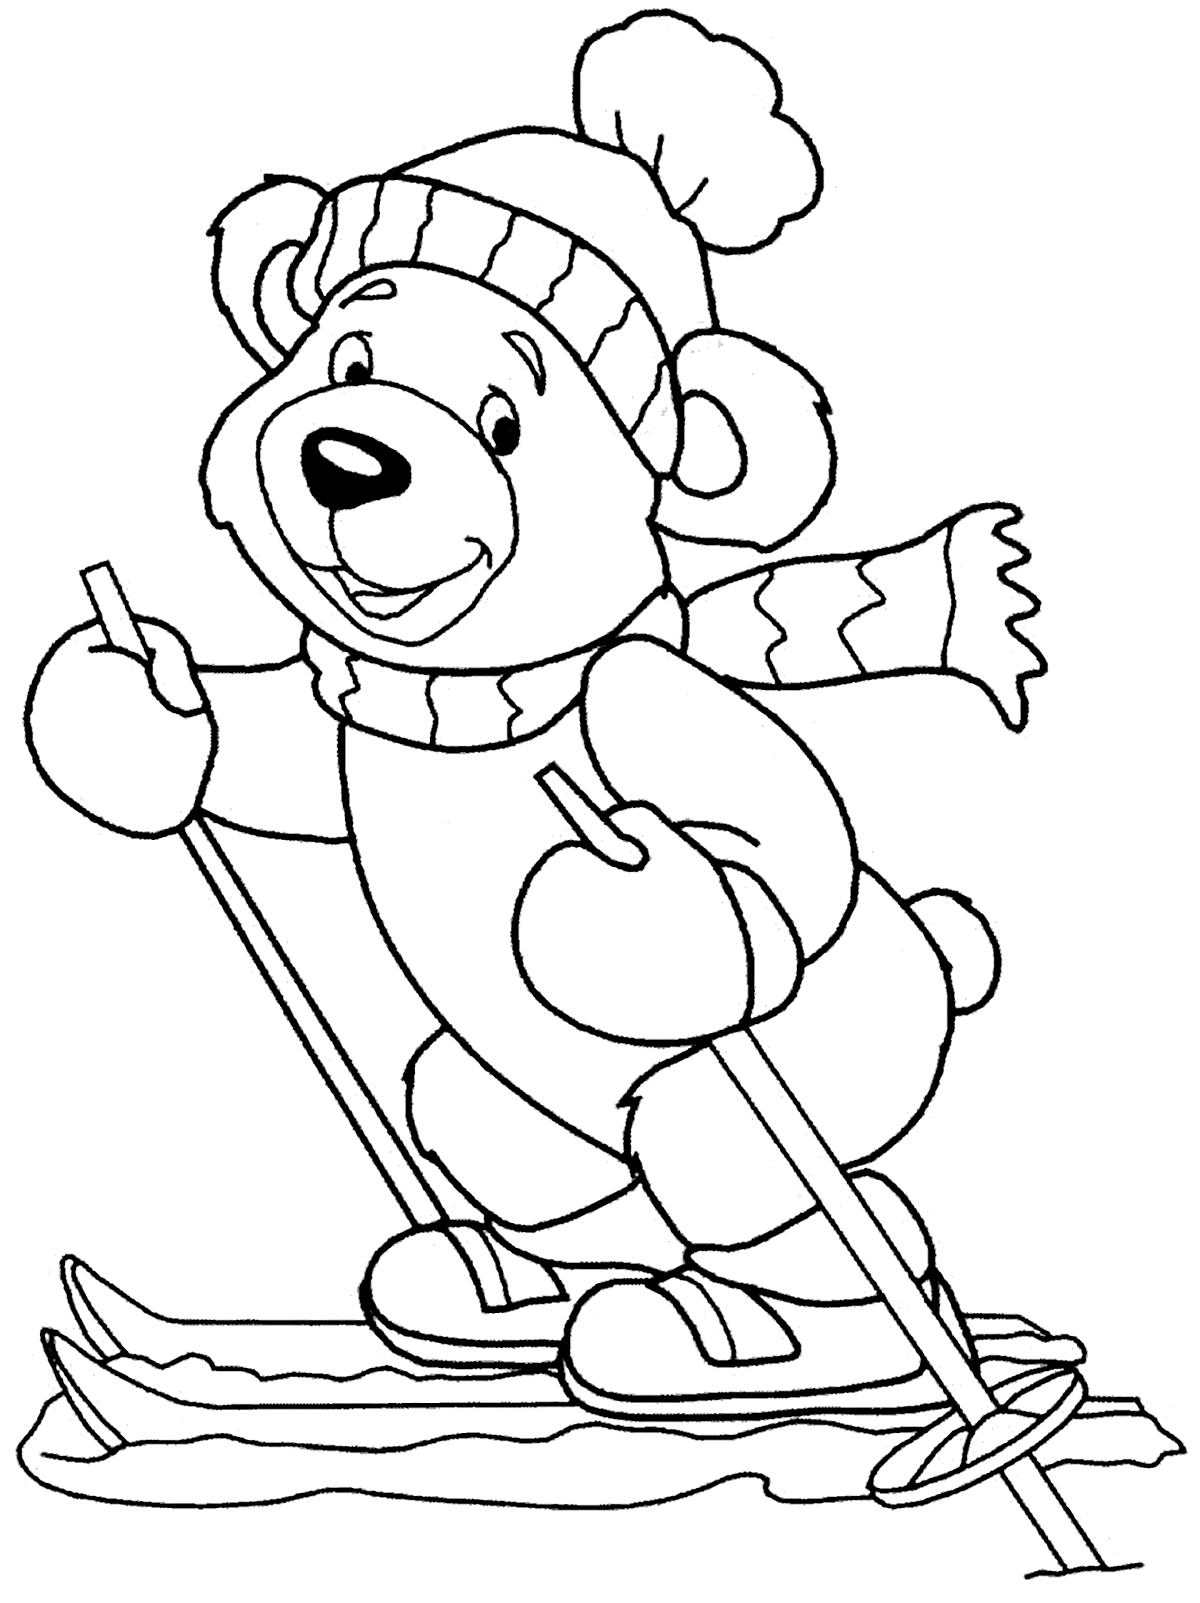 Partez au ski avec ce joli petit ourson !